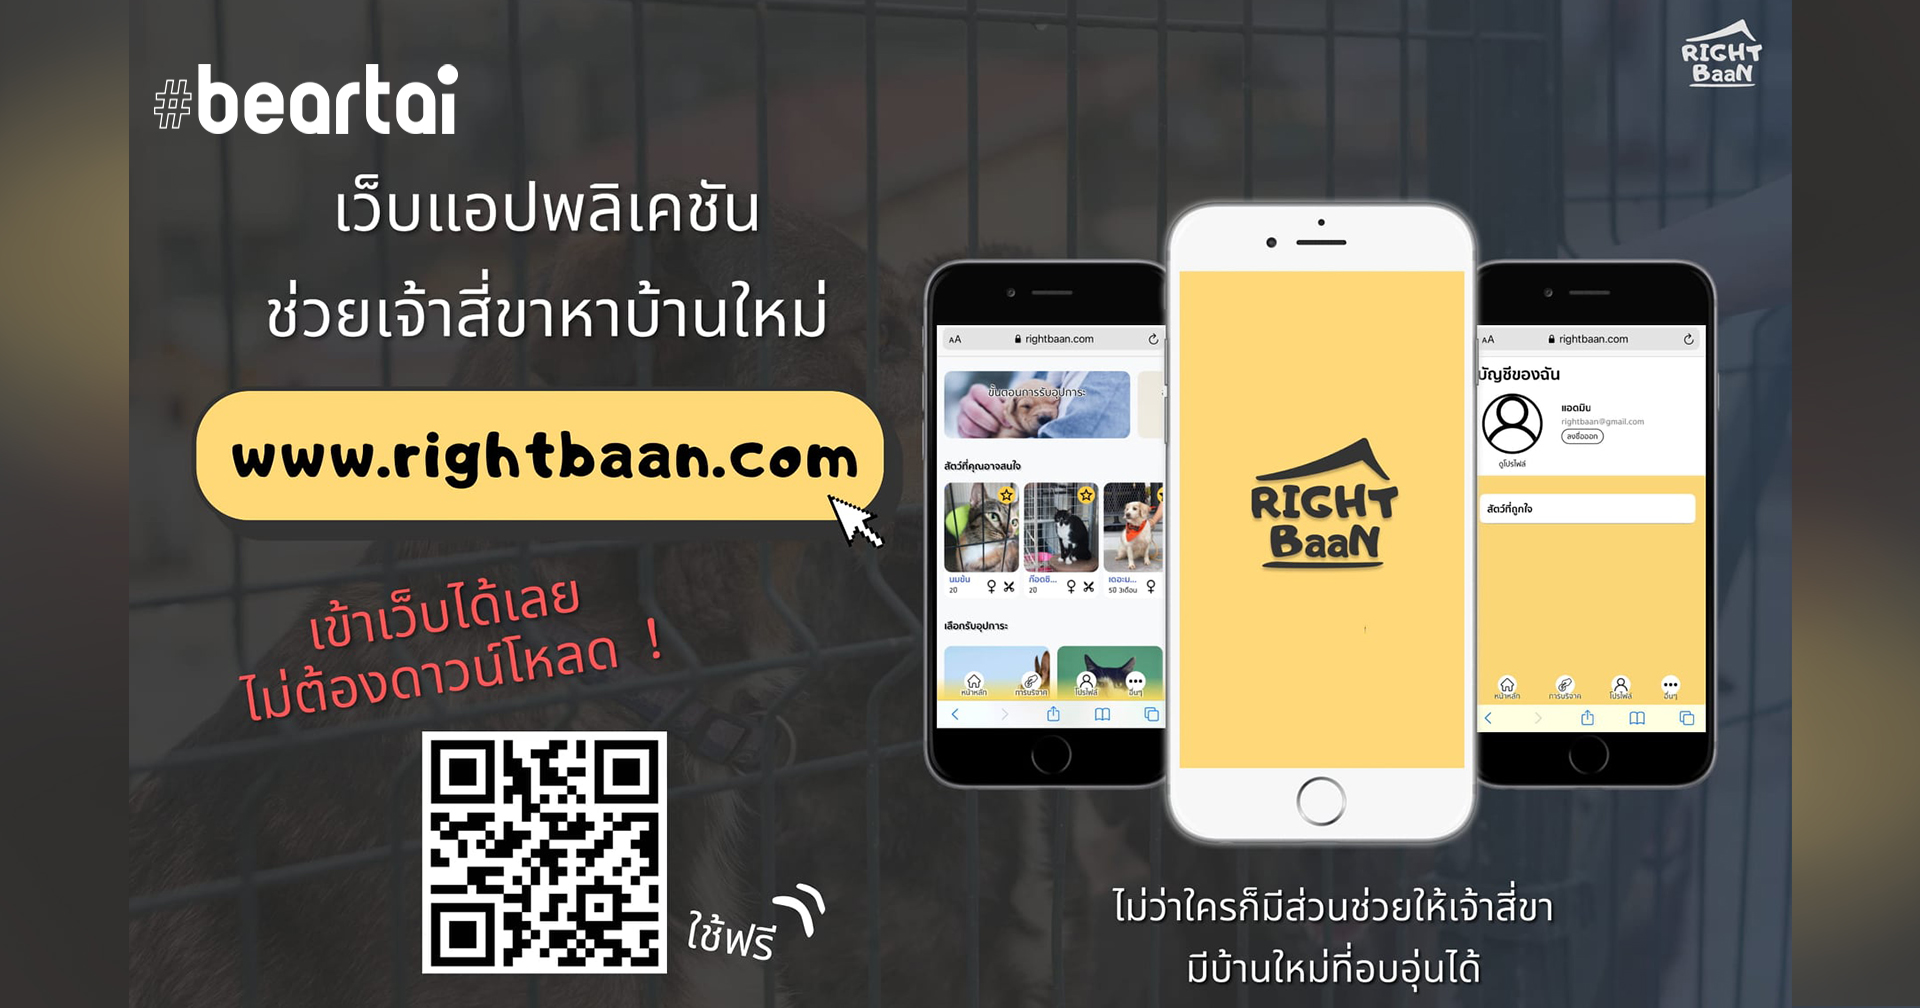 RightBaan.com เว็บแอปพลิเคชัน ‘หาบ้านที่ใช่ ให้สัตว์ไร้บ้าน’